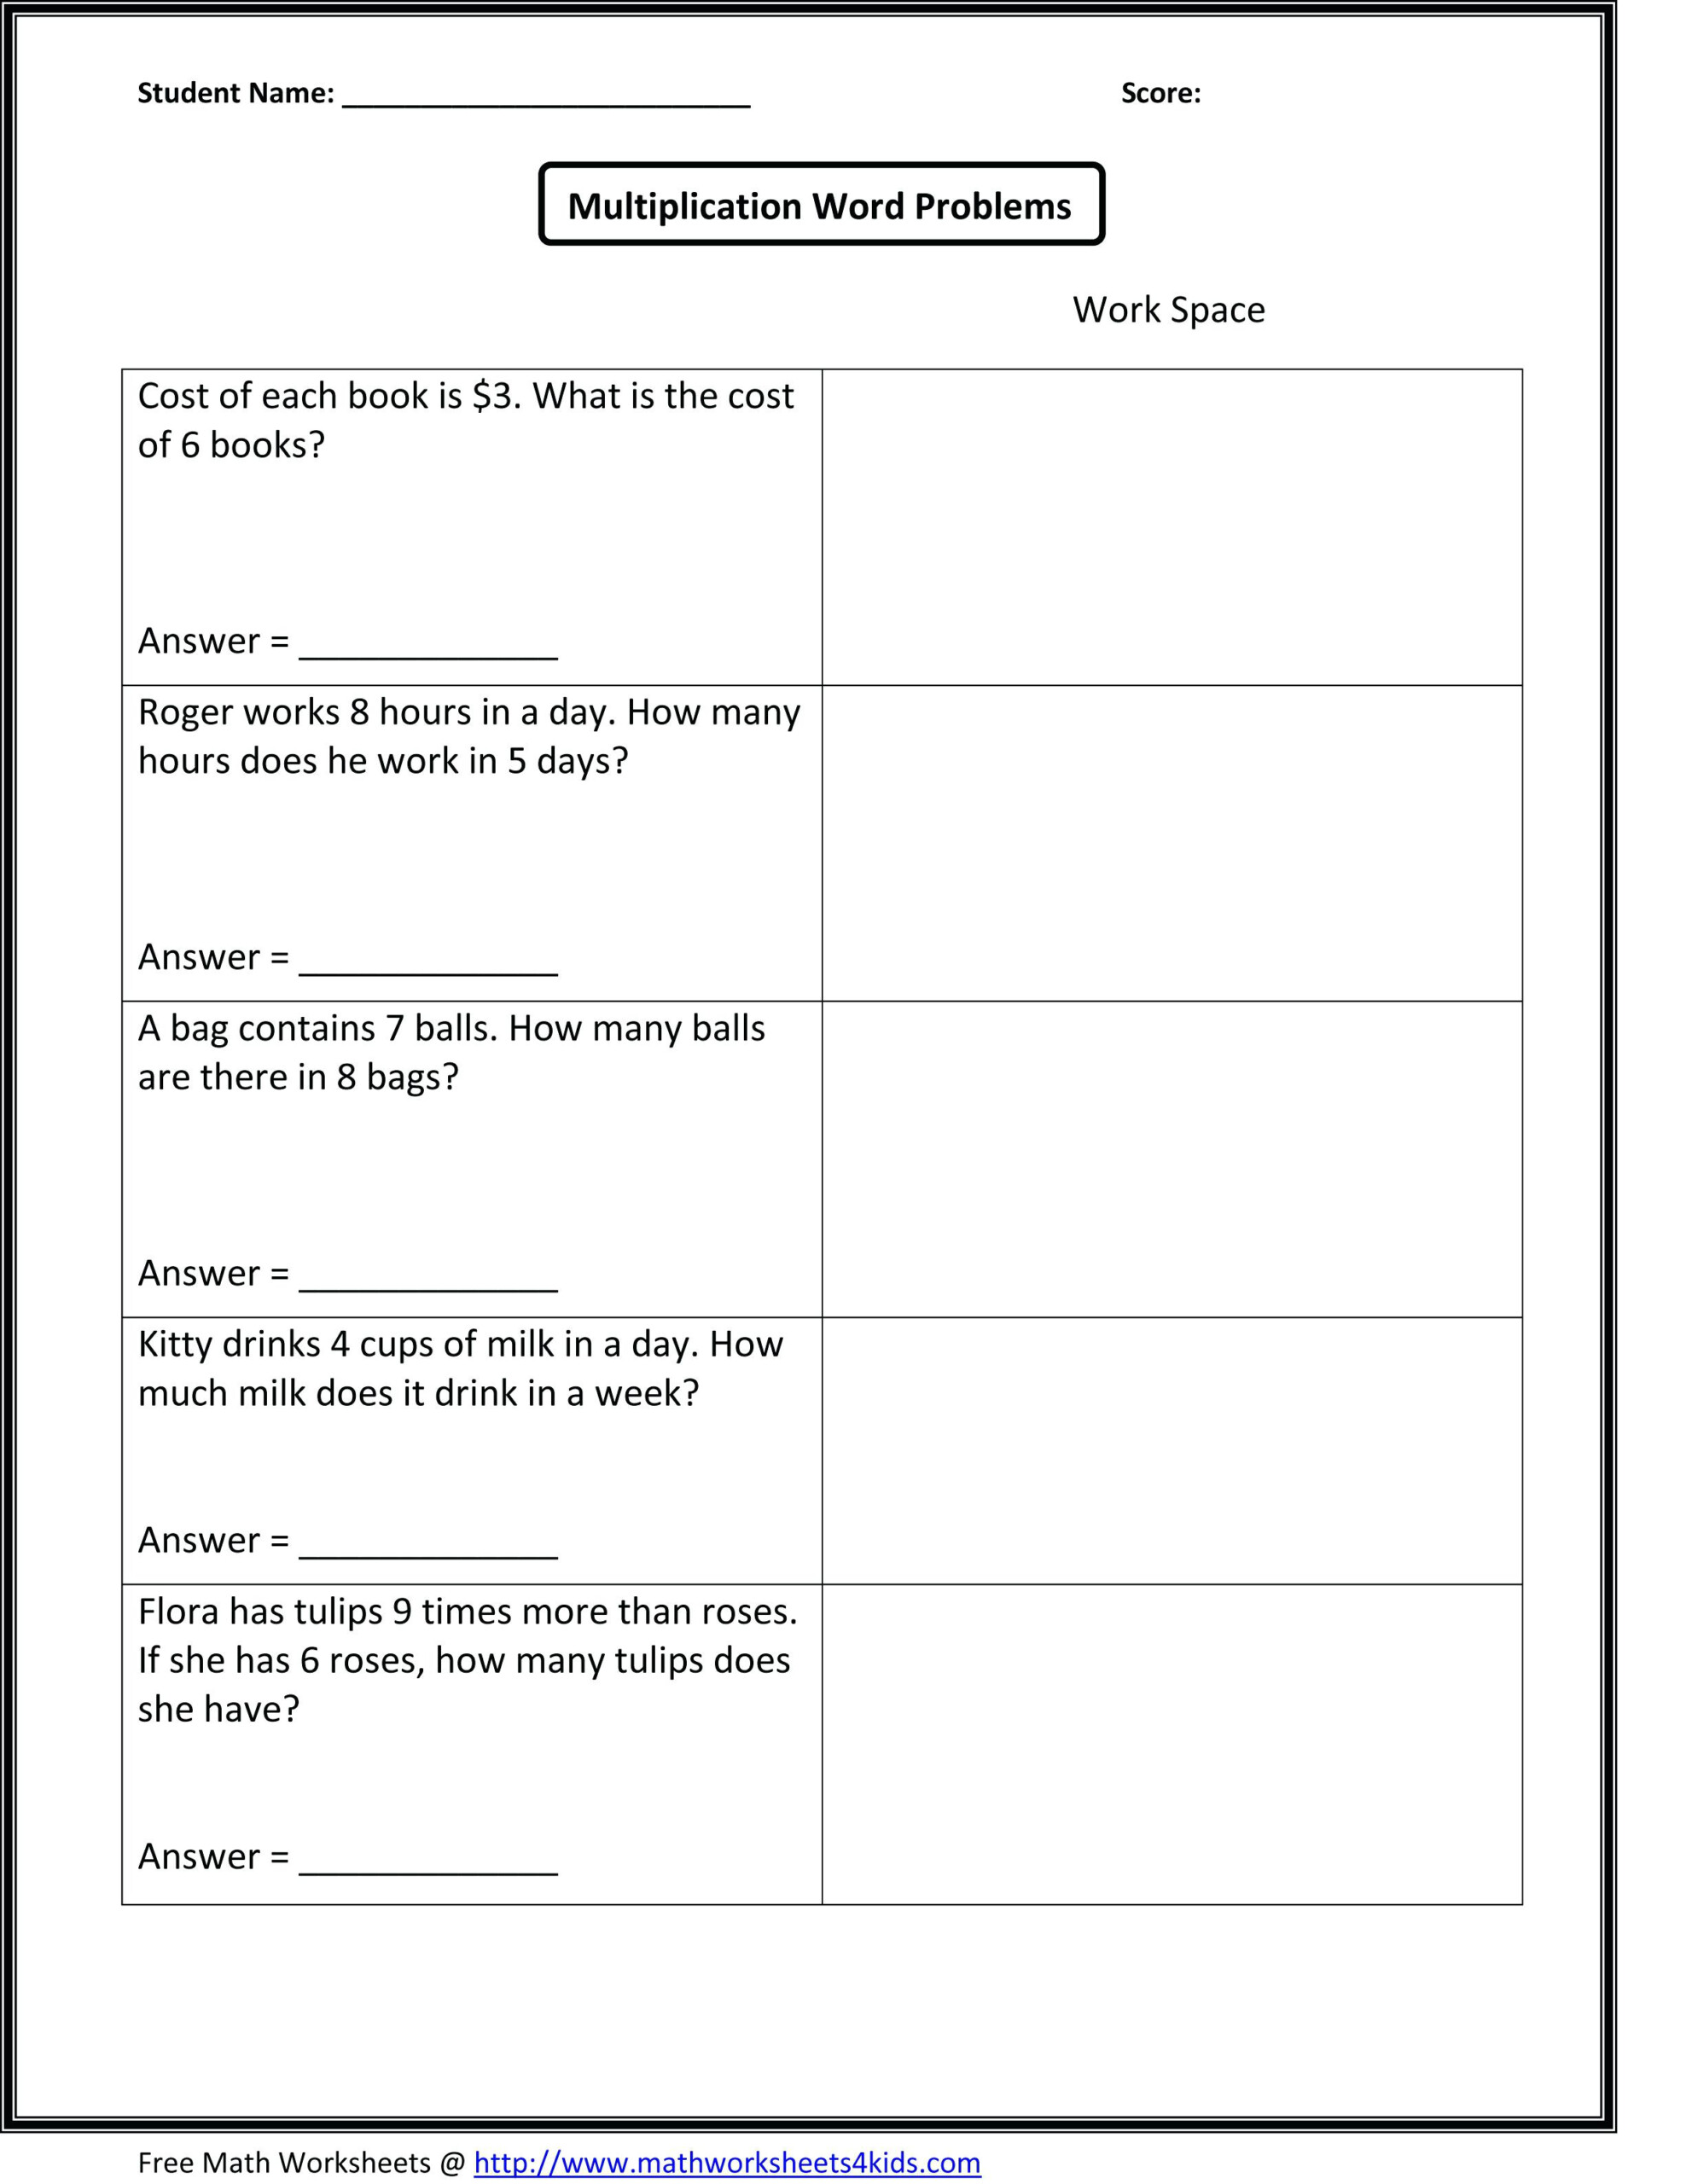 Free Multiplication Worksheet For 4Th Grade | Printable in Worksheets On Multiplication Word Problems For Grade 4